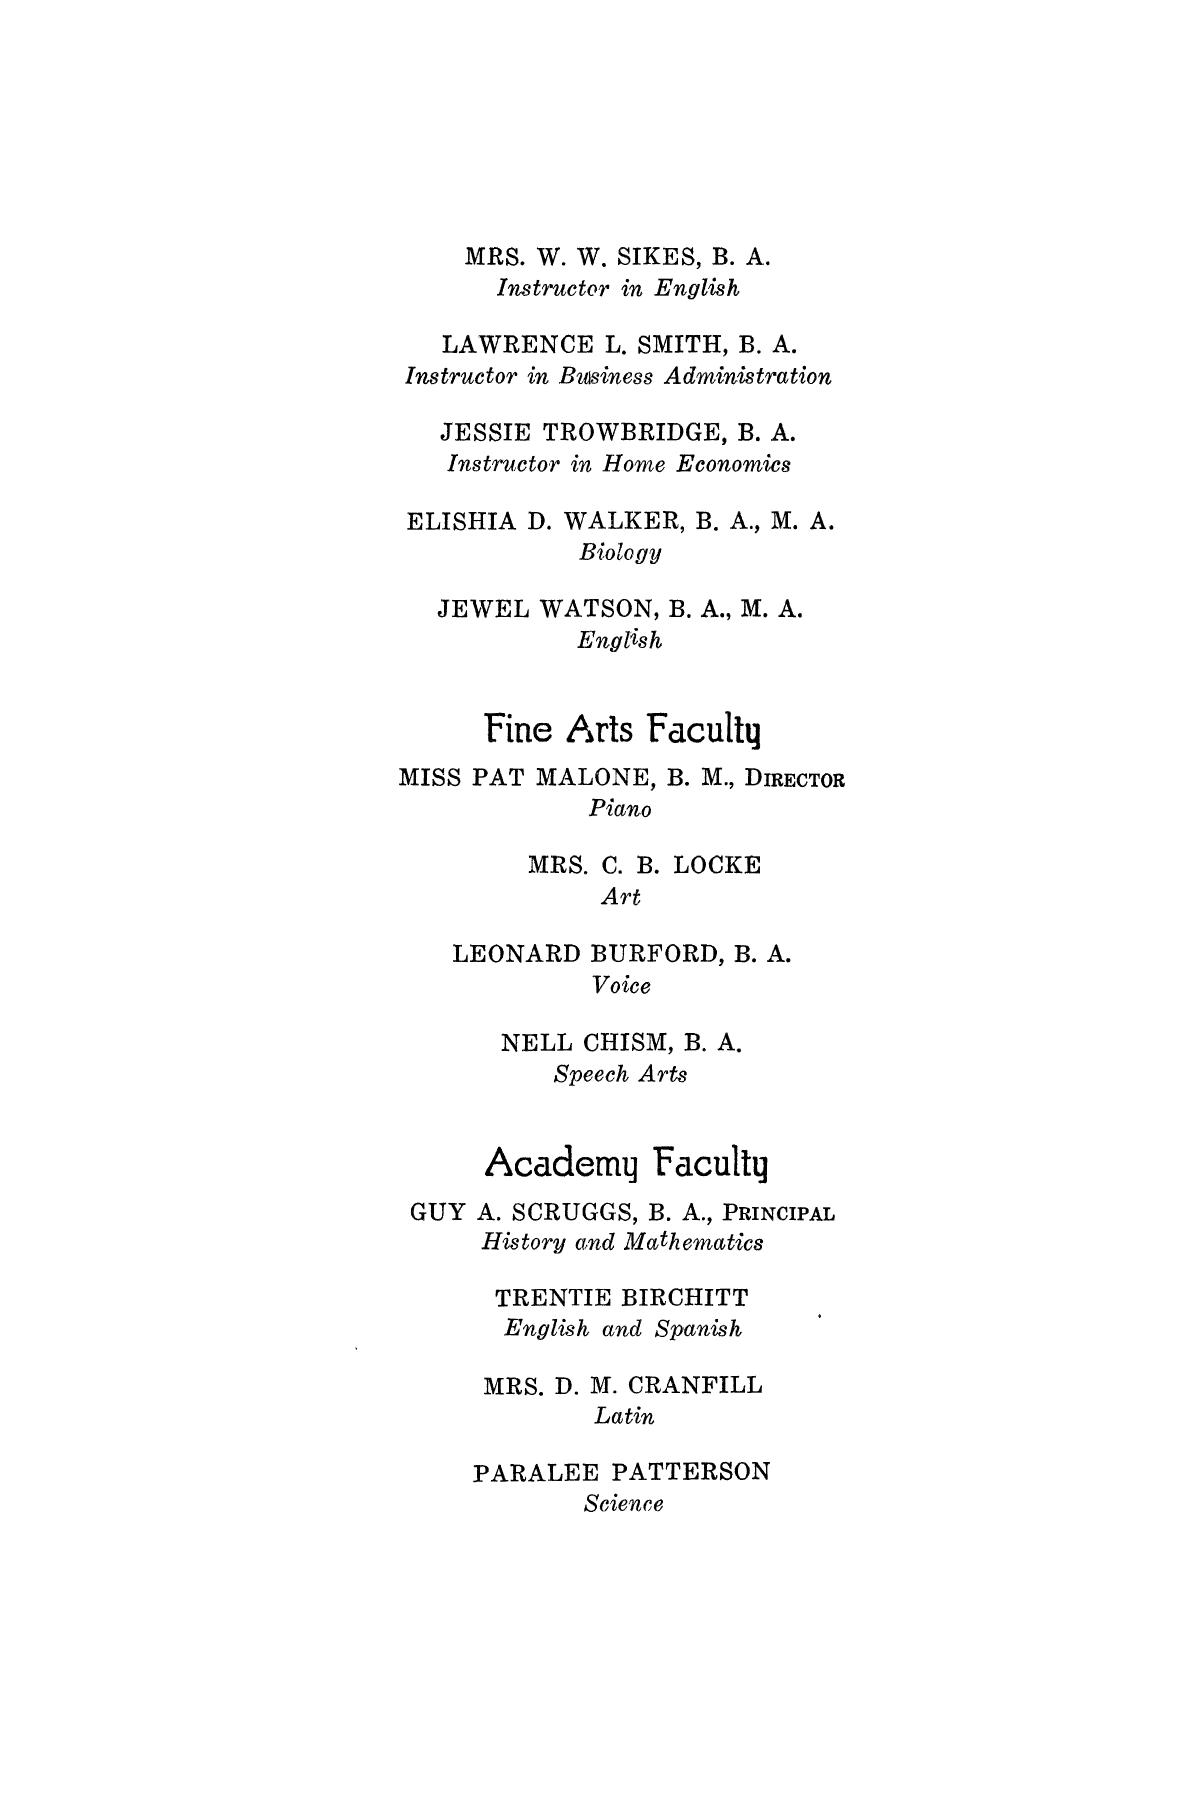 Catalog of Abilene Christian College, 1932
                                                
                                                    6
                                                